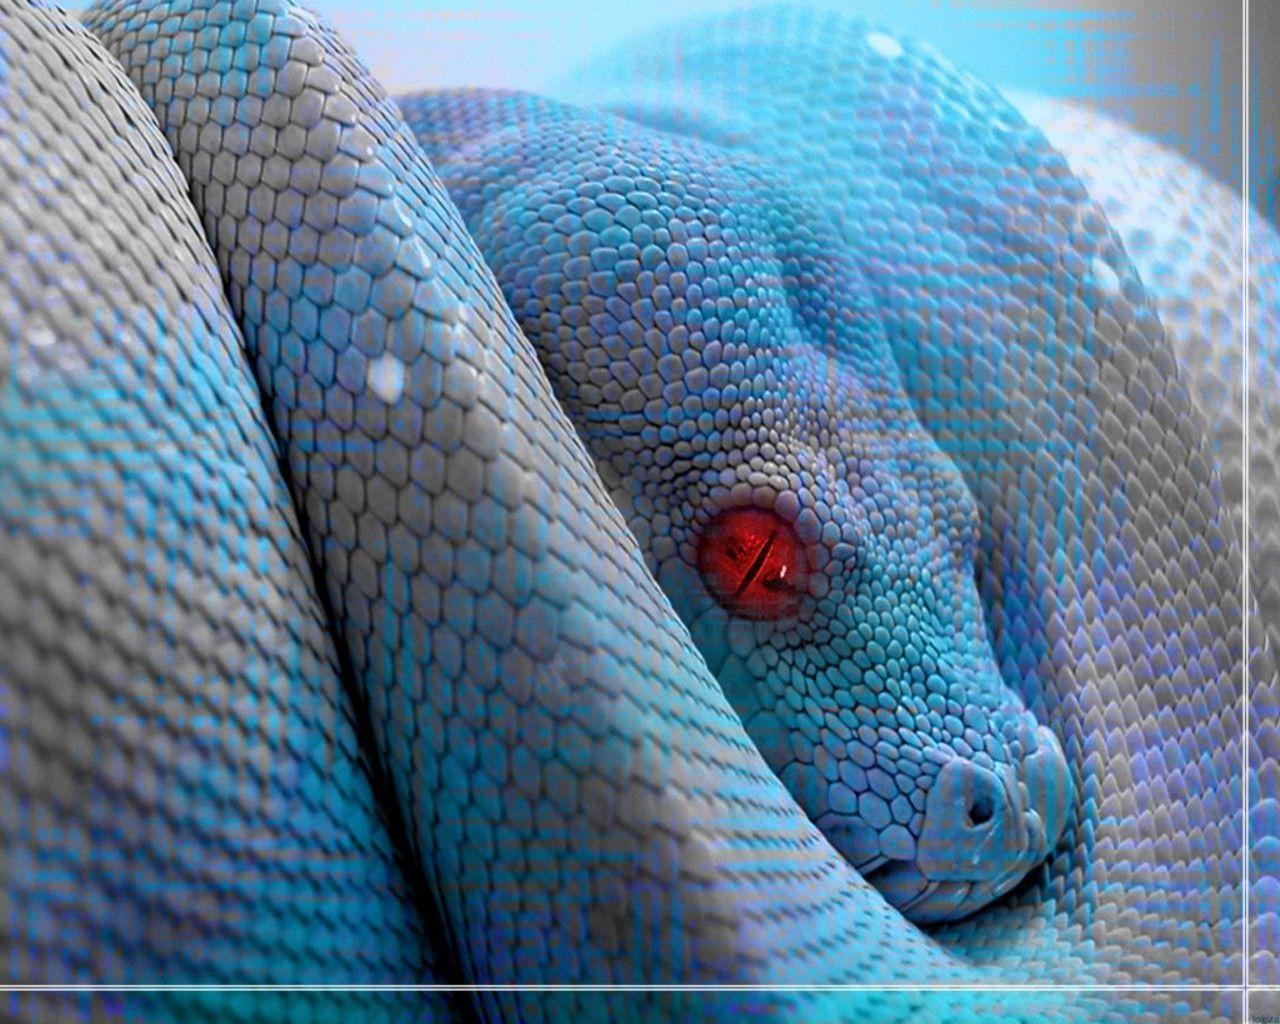 Wallpaper For > Blue Snake Wallpaper